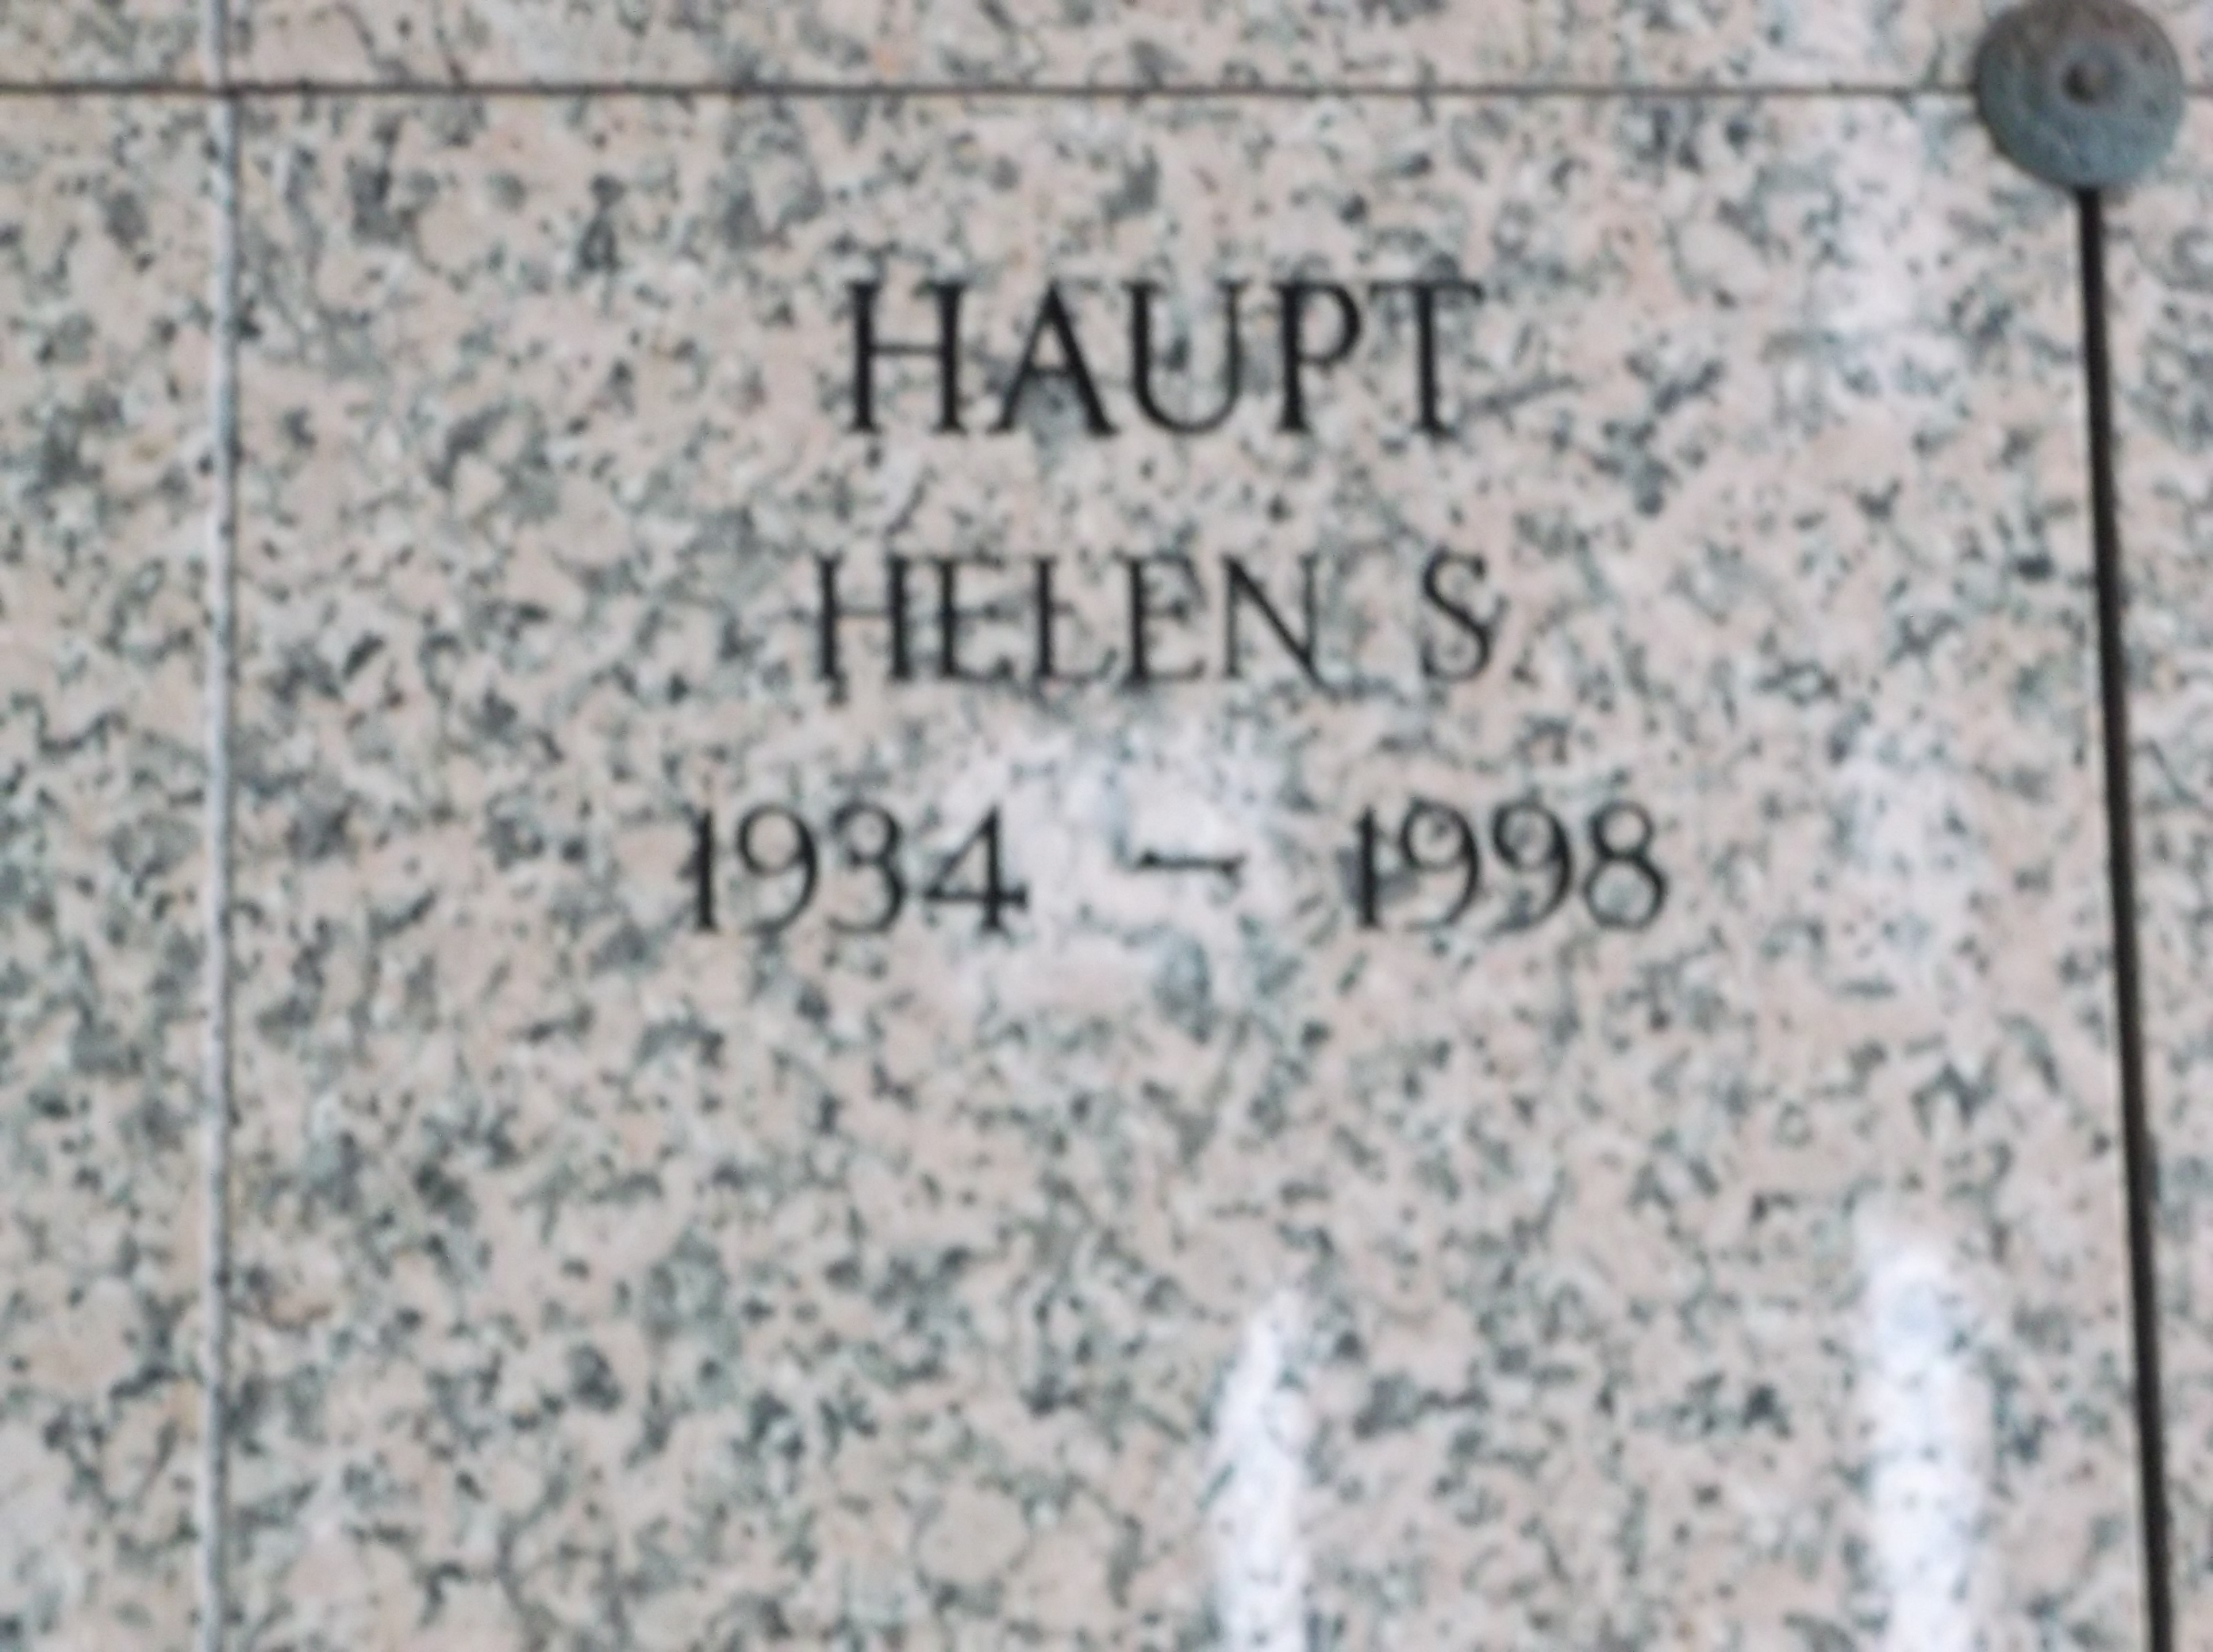 Helen S Haupt